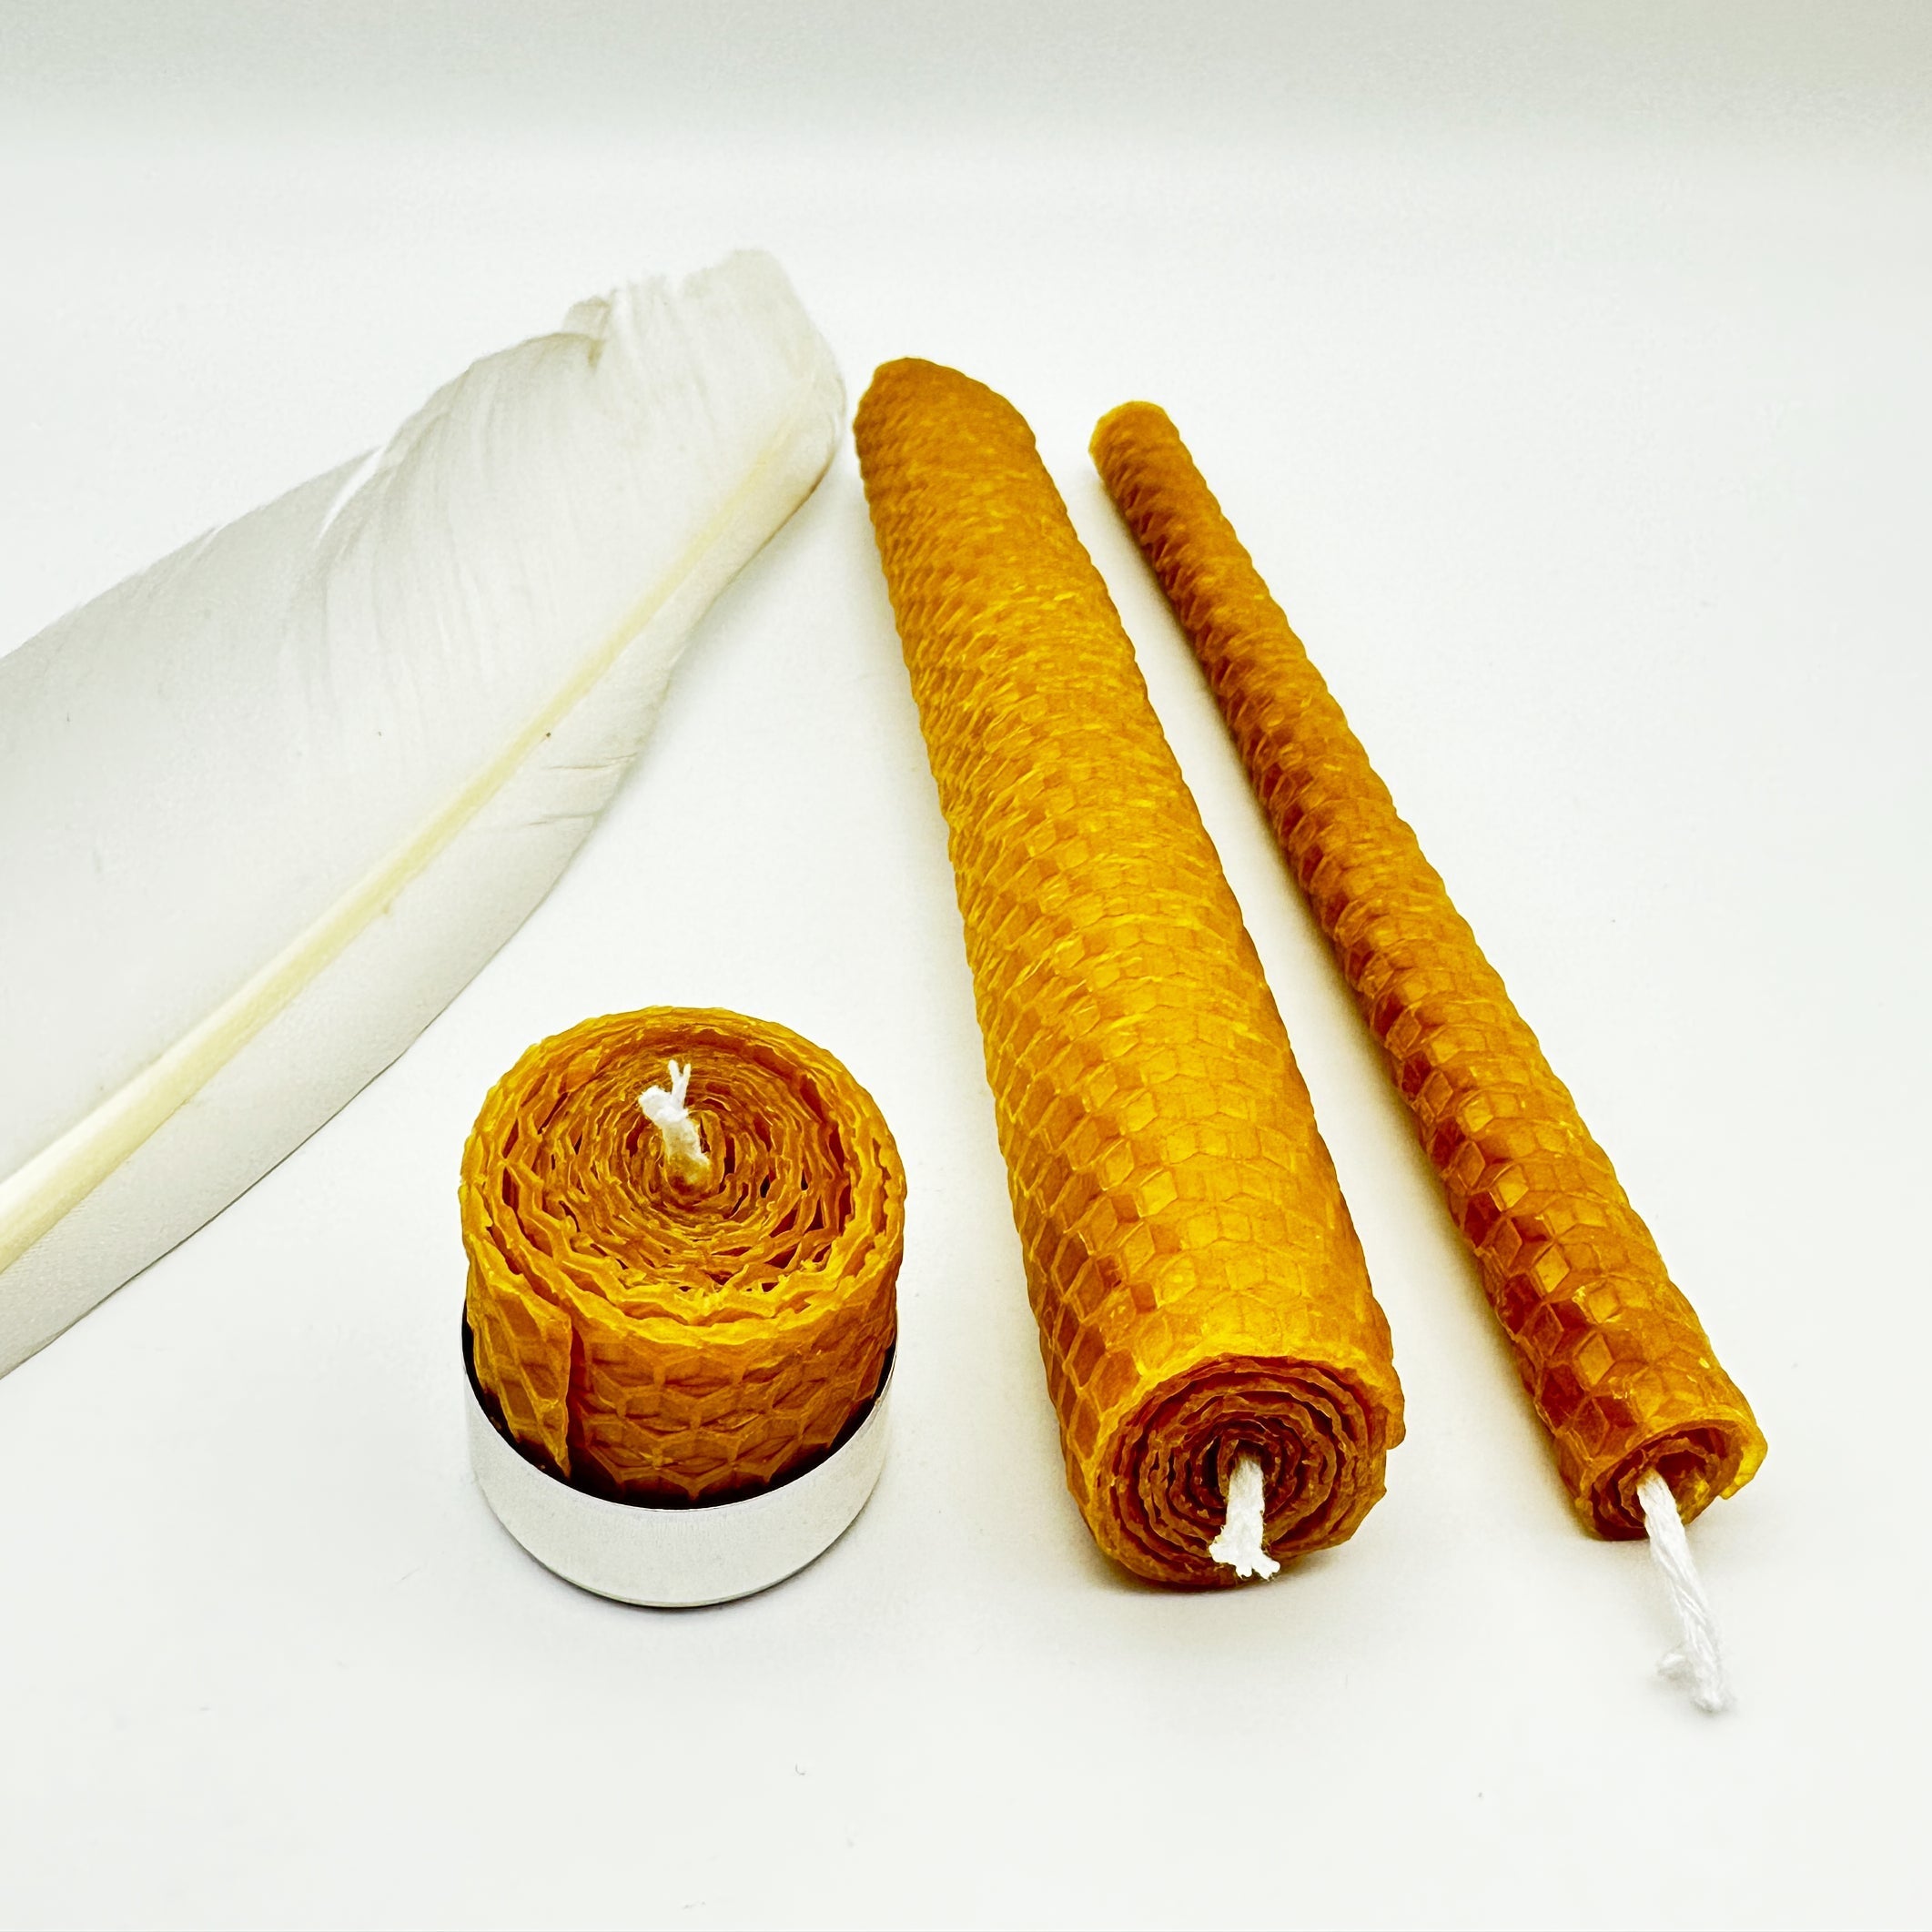 GROSSE DICKE KERZE - aus natürlichem Bienenwachs - Kerzen